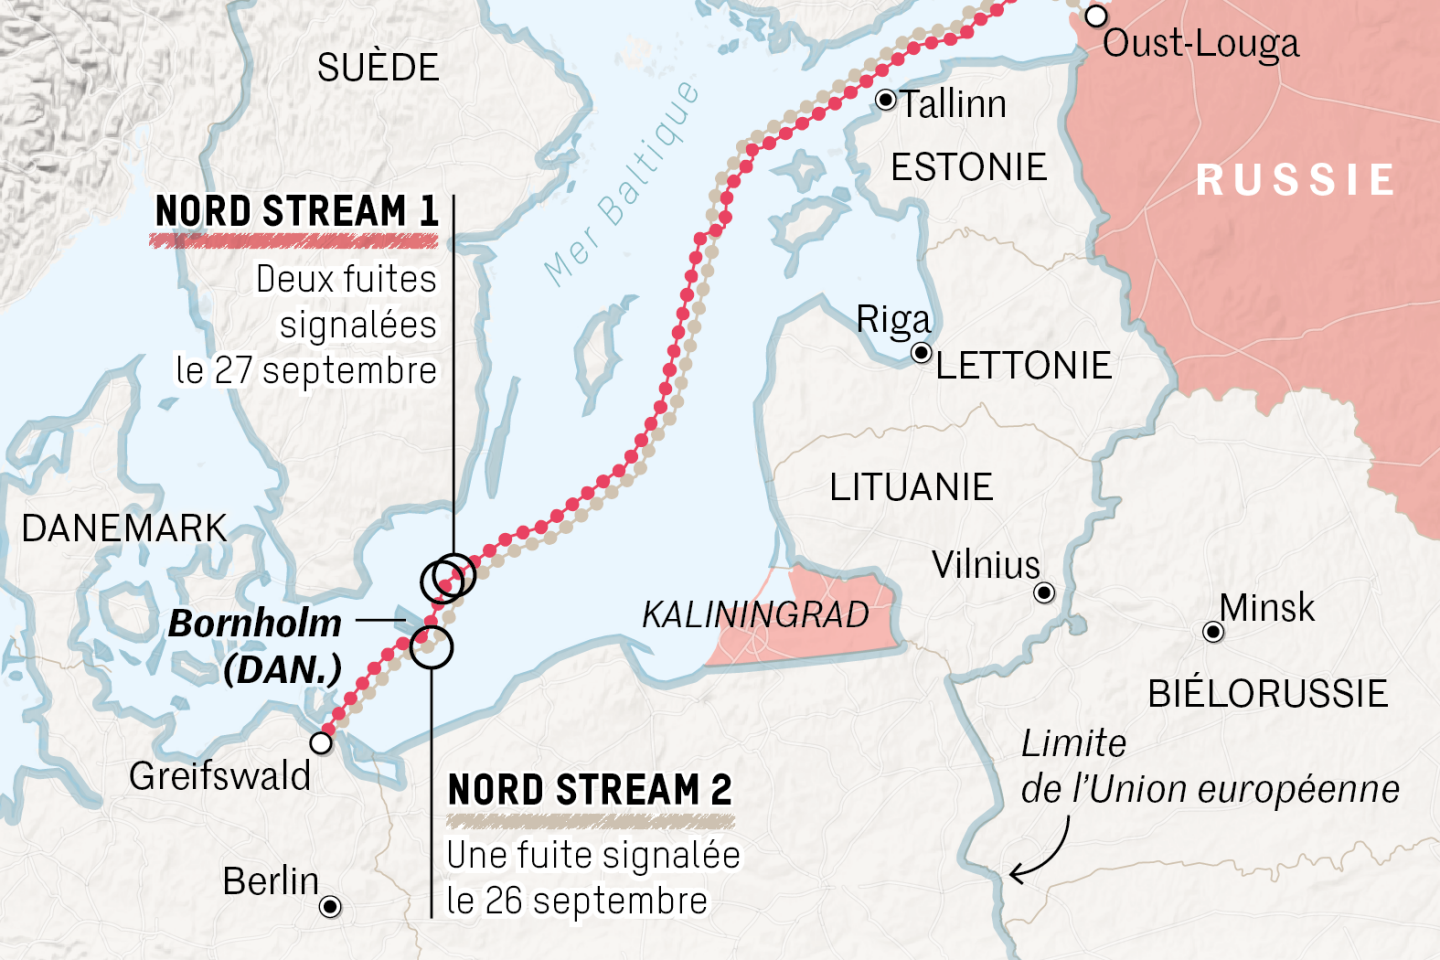 Sabotage présumé de Nord Stream : Suède et Finlande soupçonnent une intervention étrangère, la Russie se défend